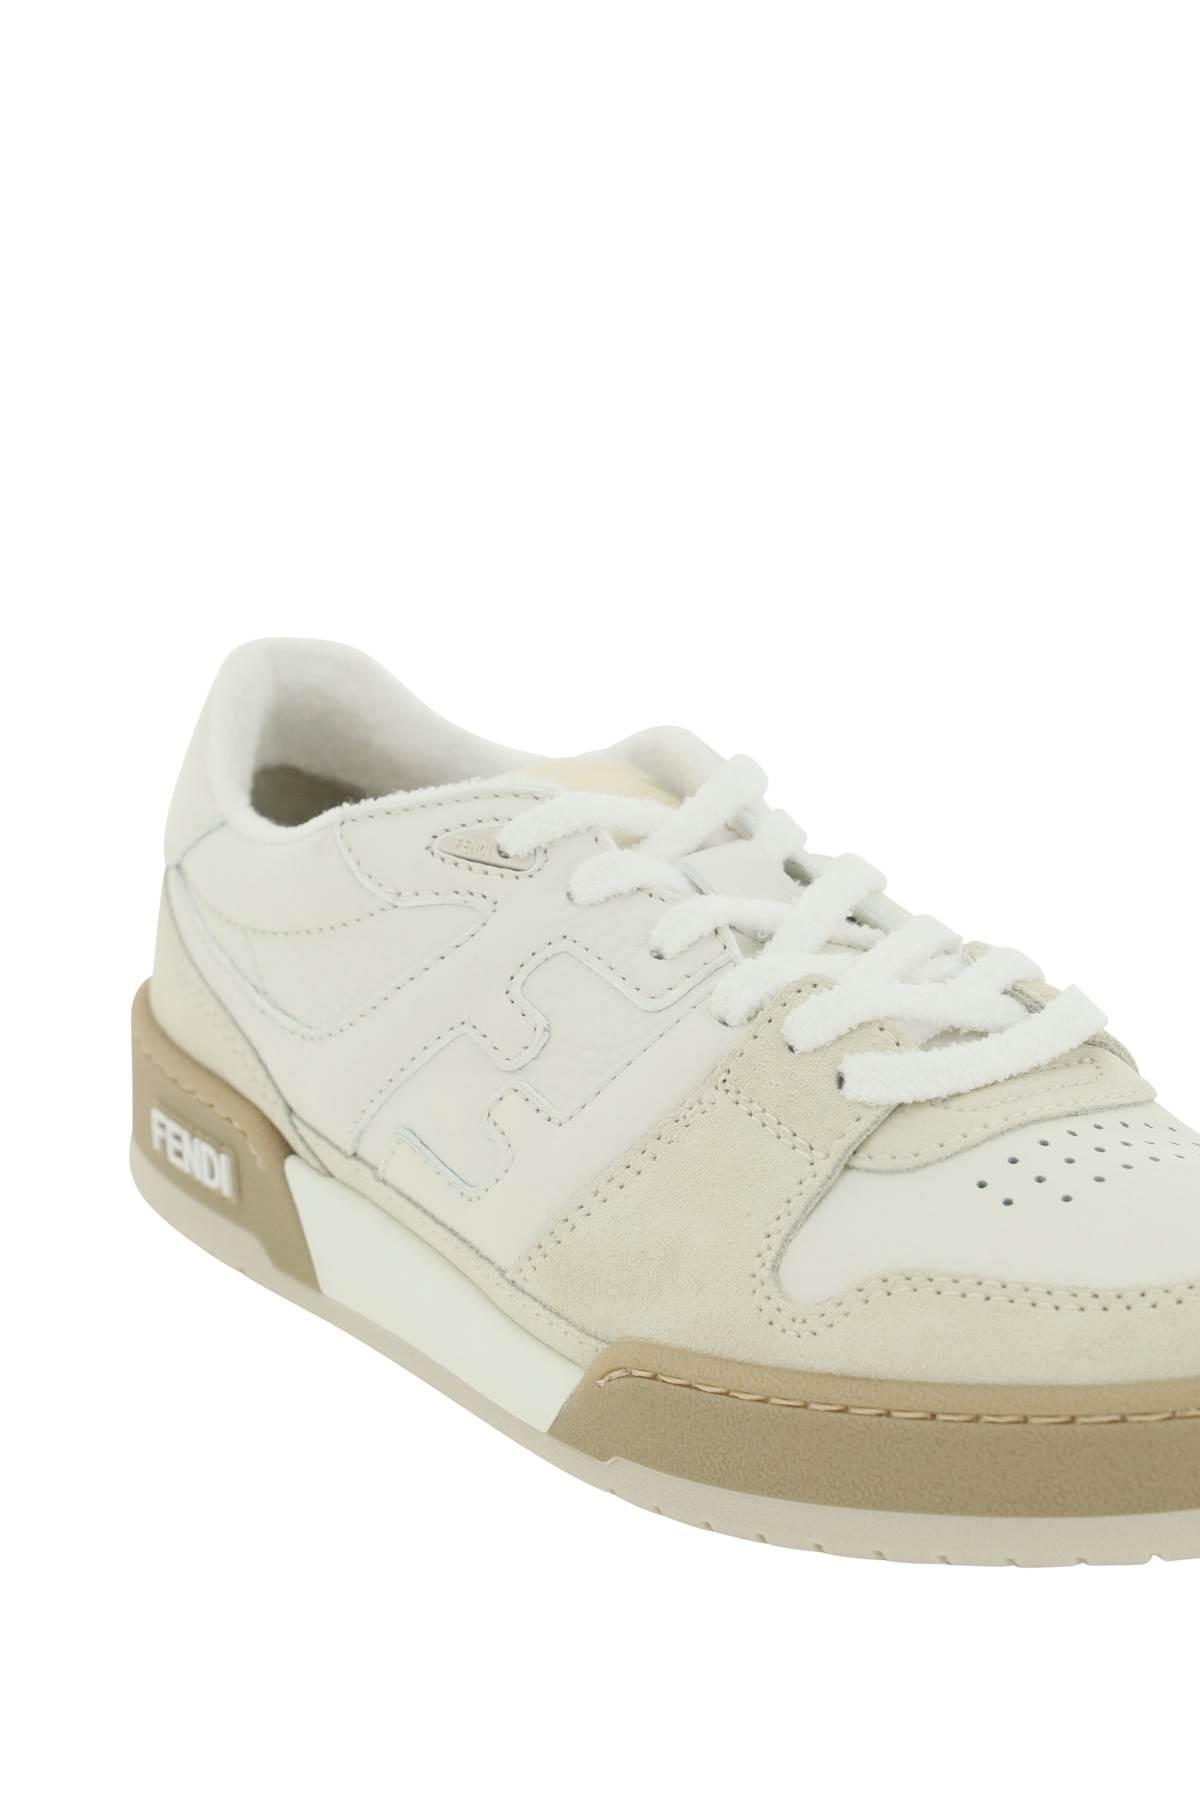 Fendi Match Sneakers in White | Lyst